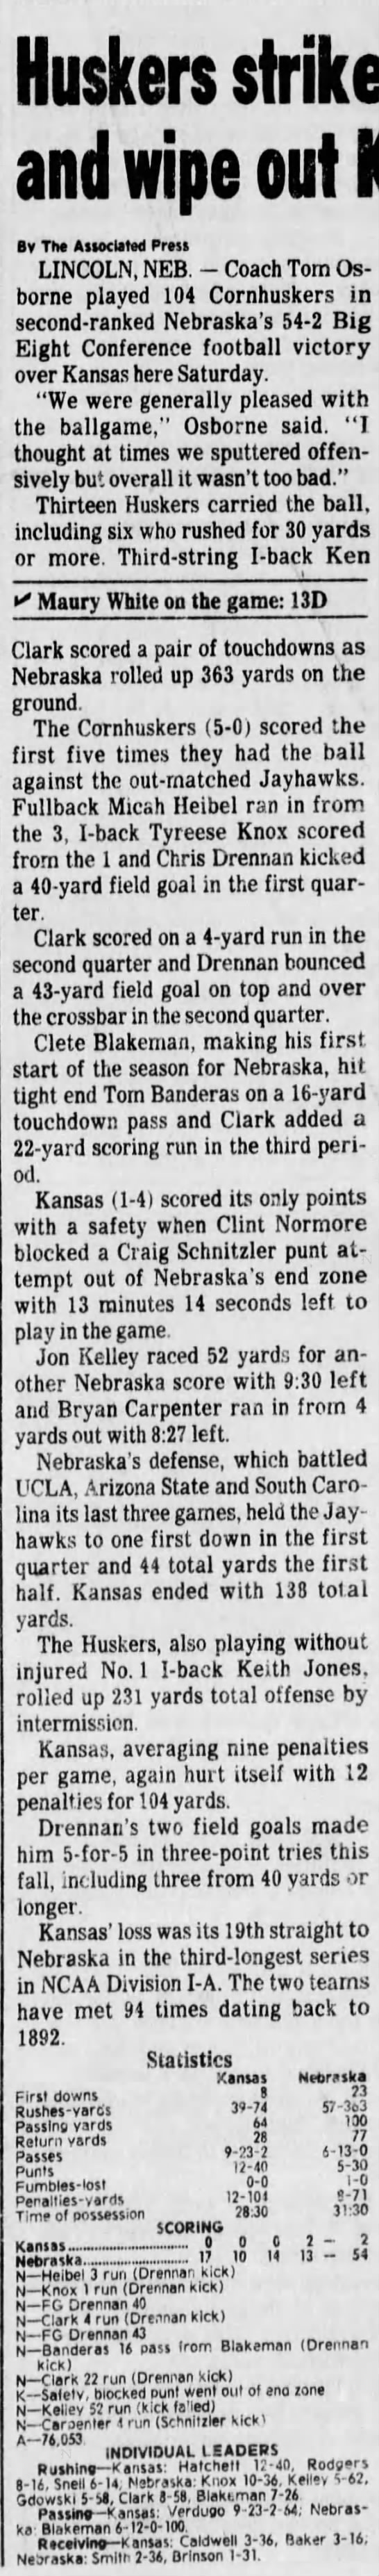 1987 Nebraska-Kansas football AP - 